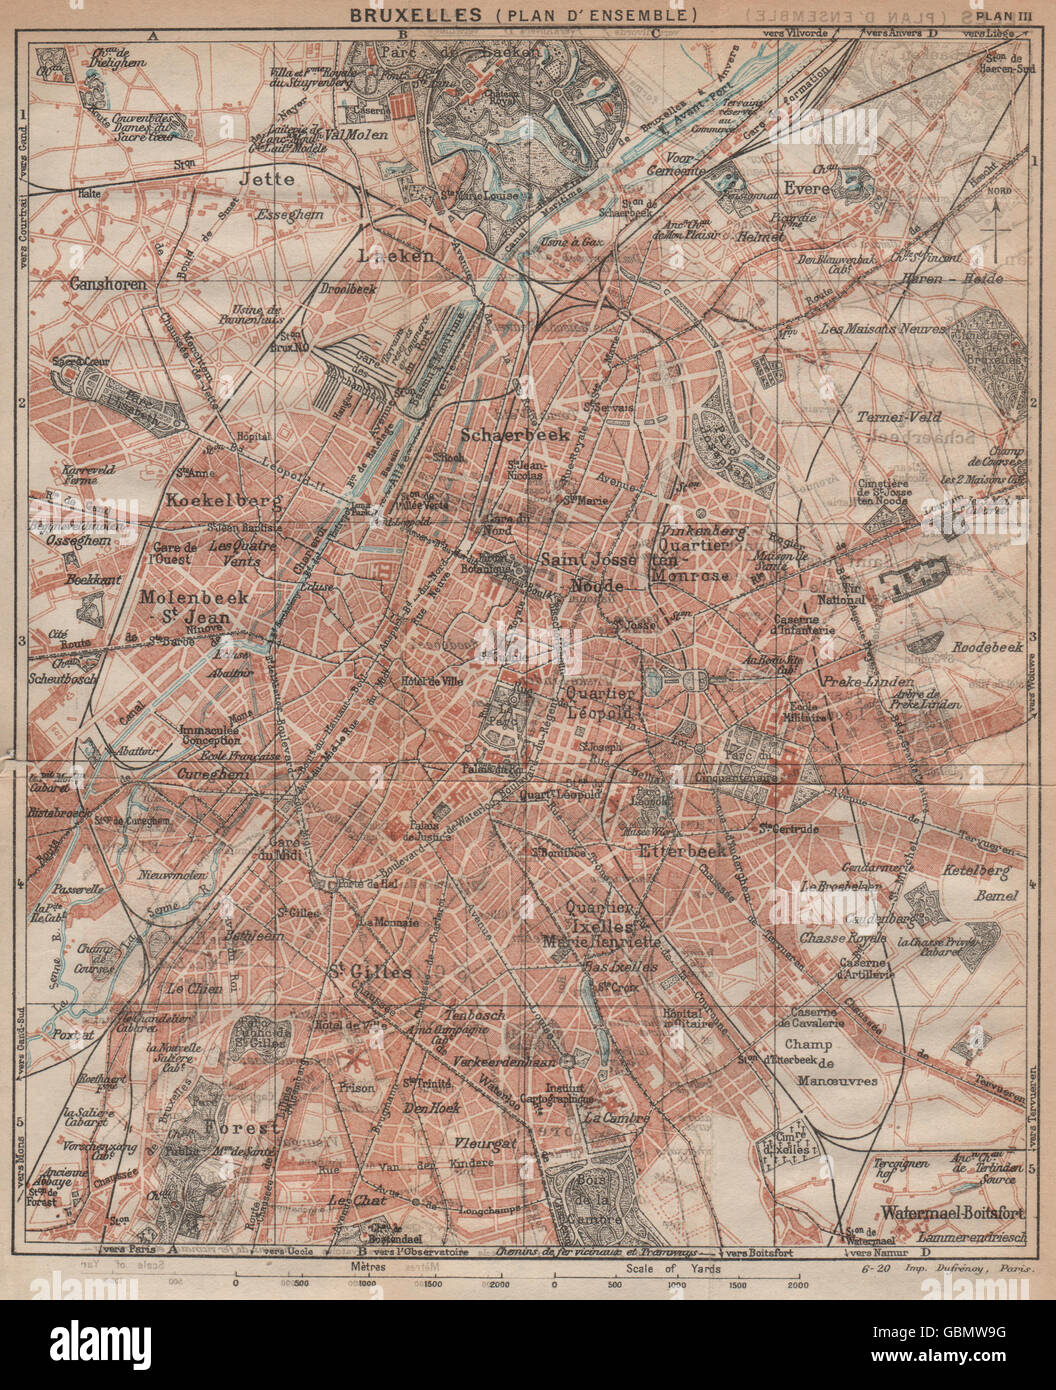 BRUXELLES (PLAN D'ENSEMBLE) . Vintage town city plan. Belgium. Brussels 1920 map Stock Photo